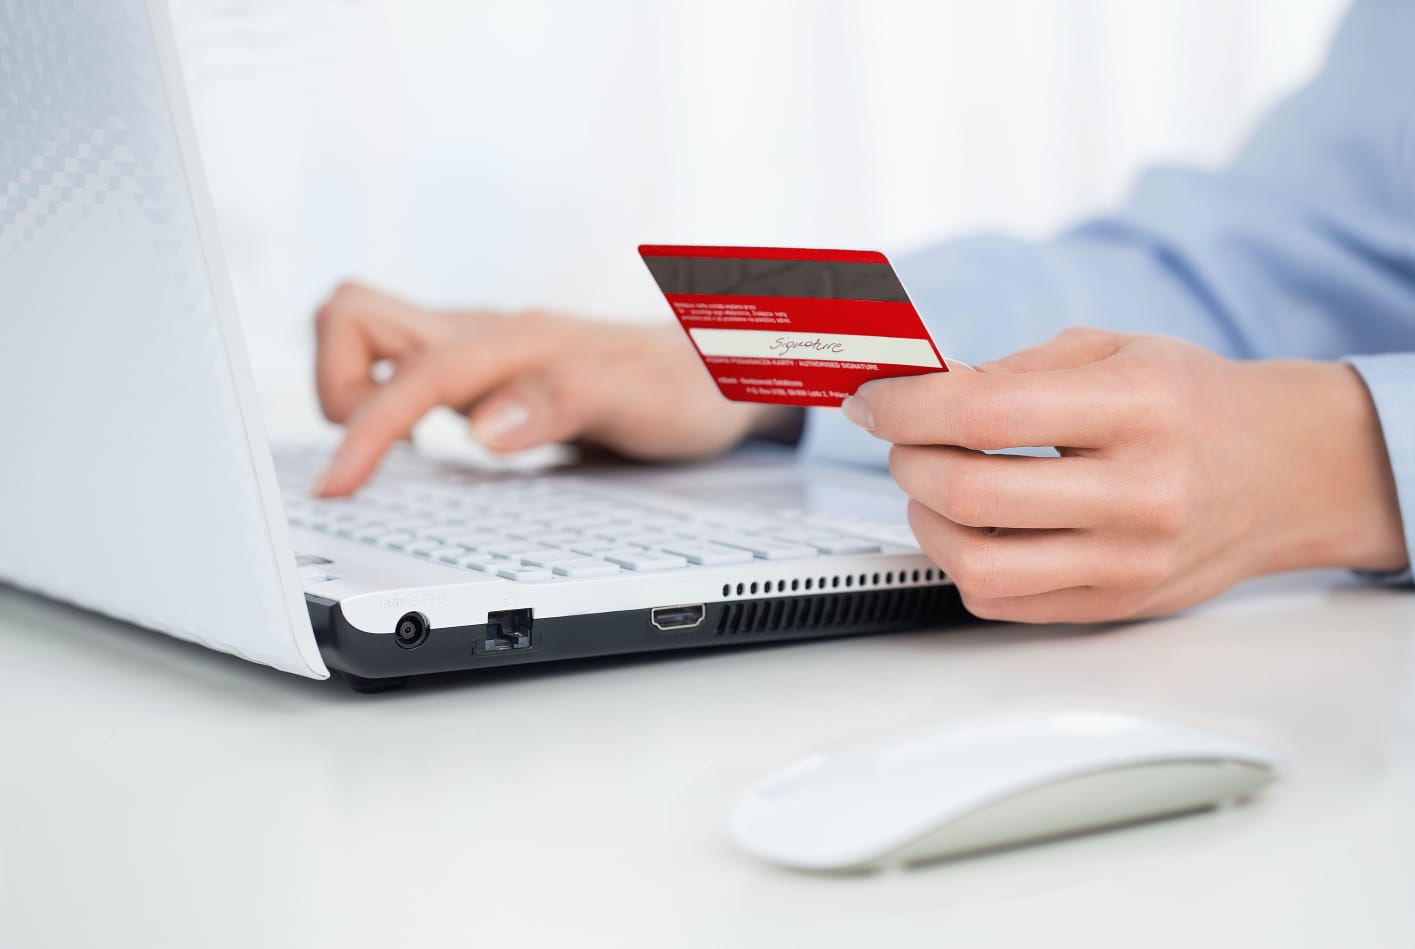 BAC lanza “Protección Digital”, primer seguro contra phishing en el país